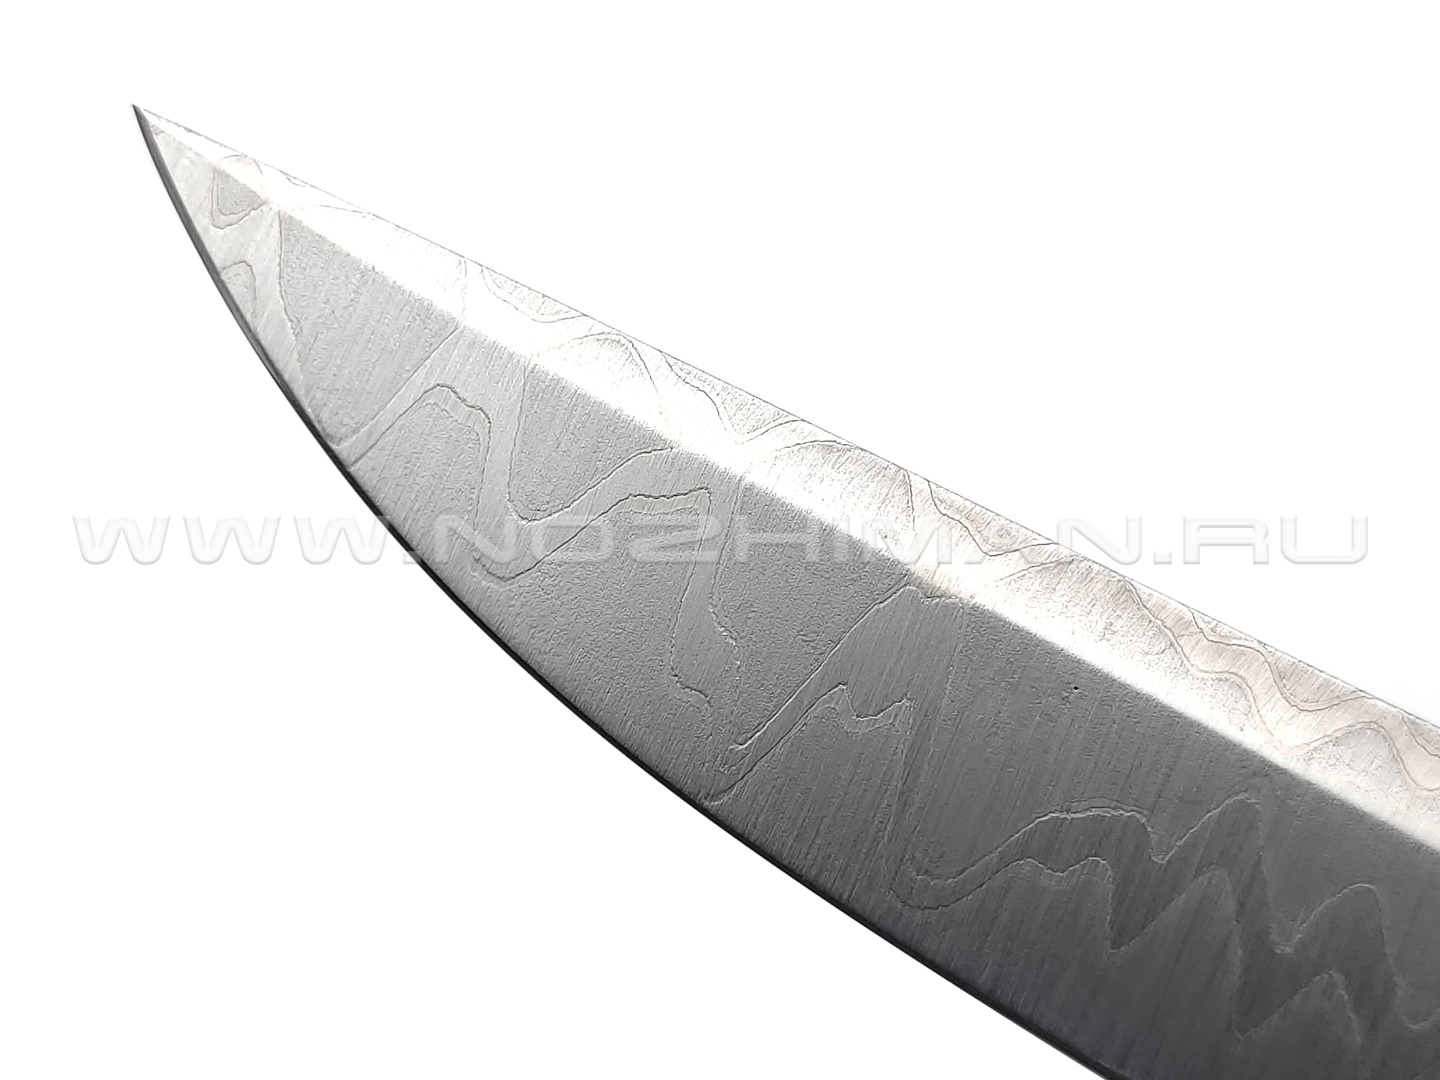 Нож Burlax BX0070 сталь ламинат N690, рукоять Carbon fiber